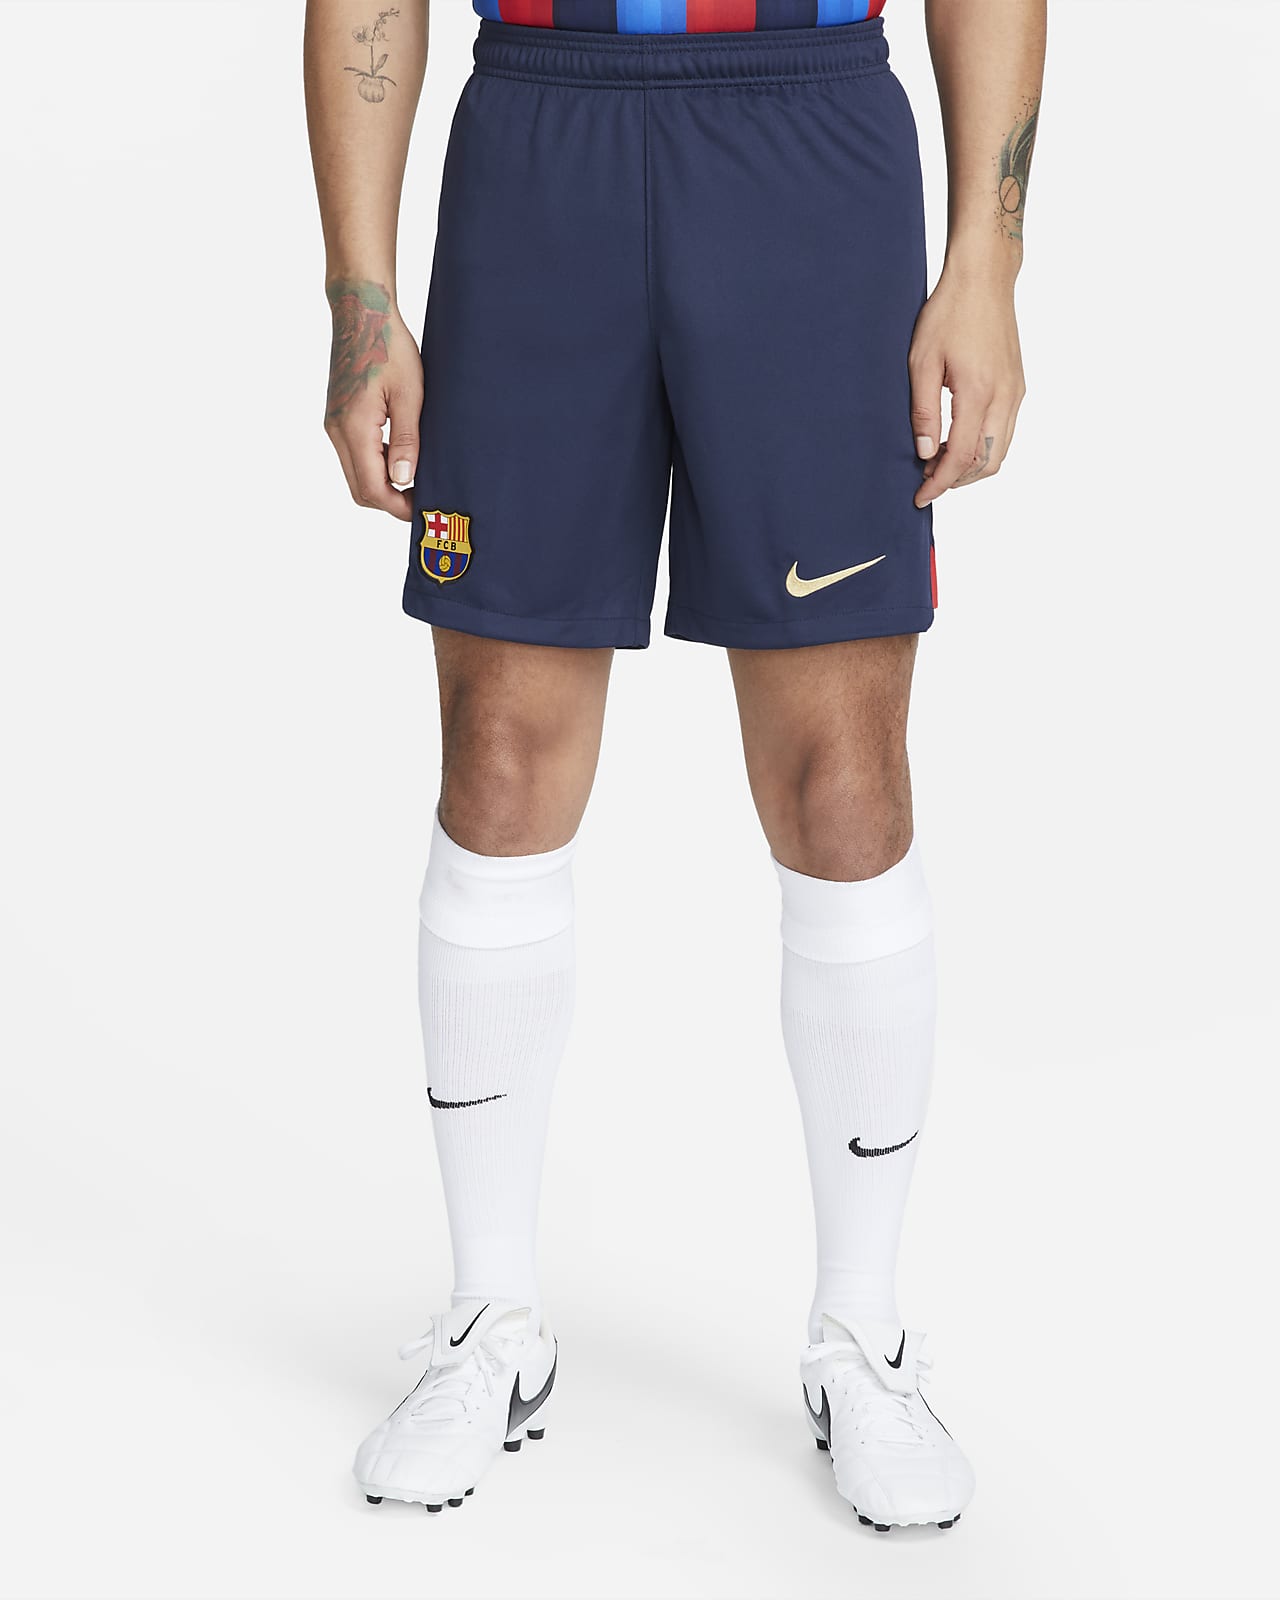 Giraffe Pedagogie Ontkennen FC Barcelona 2022/23 Stadium Home Men's Nike Dri-FIT Soccer Shorts. Nike.com